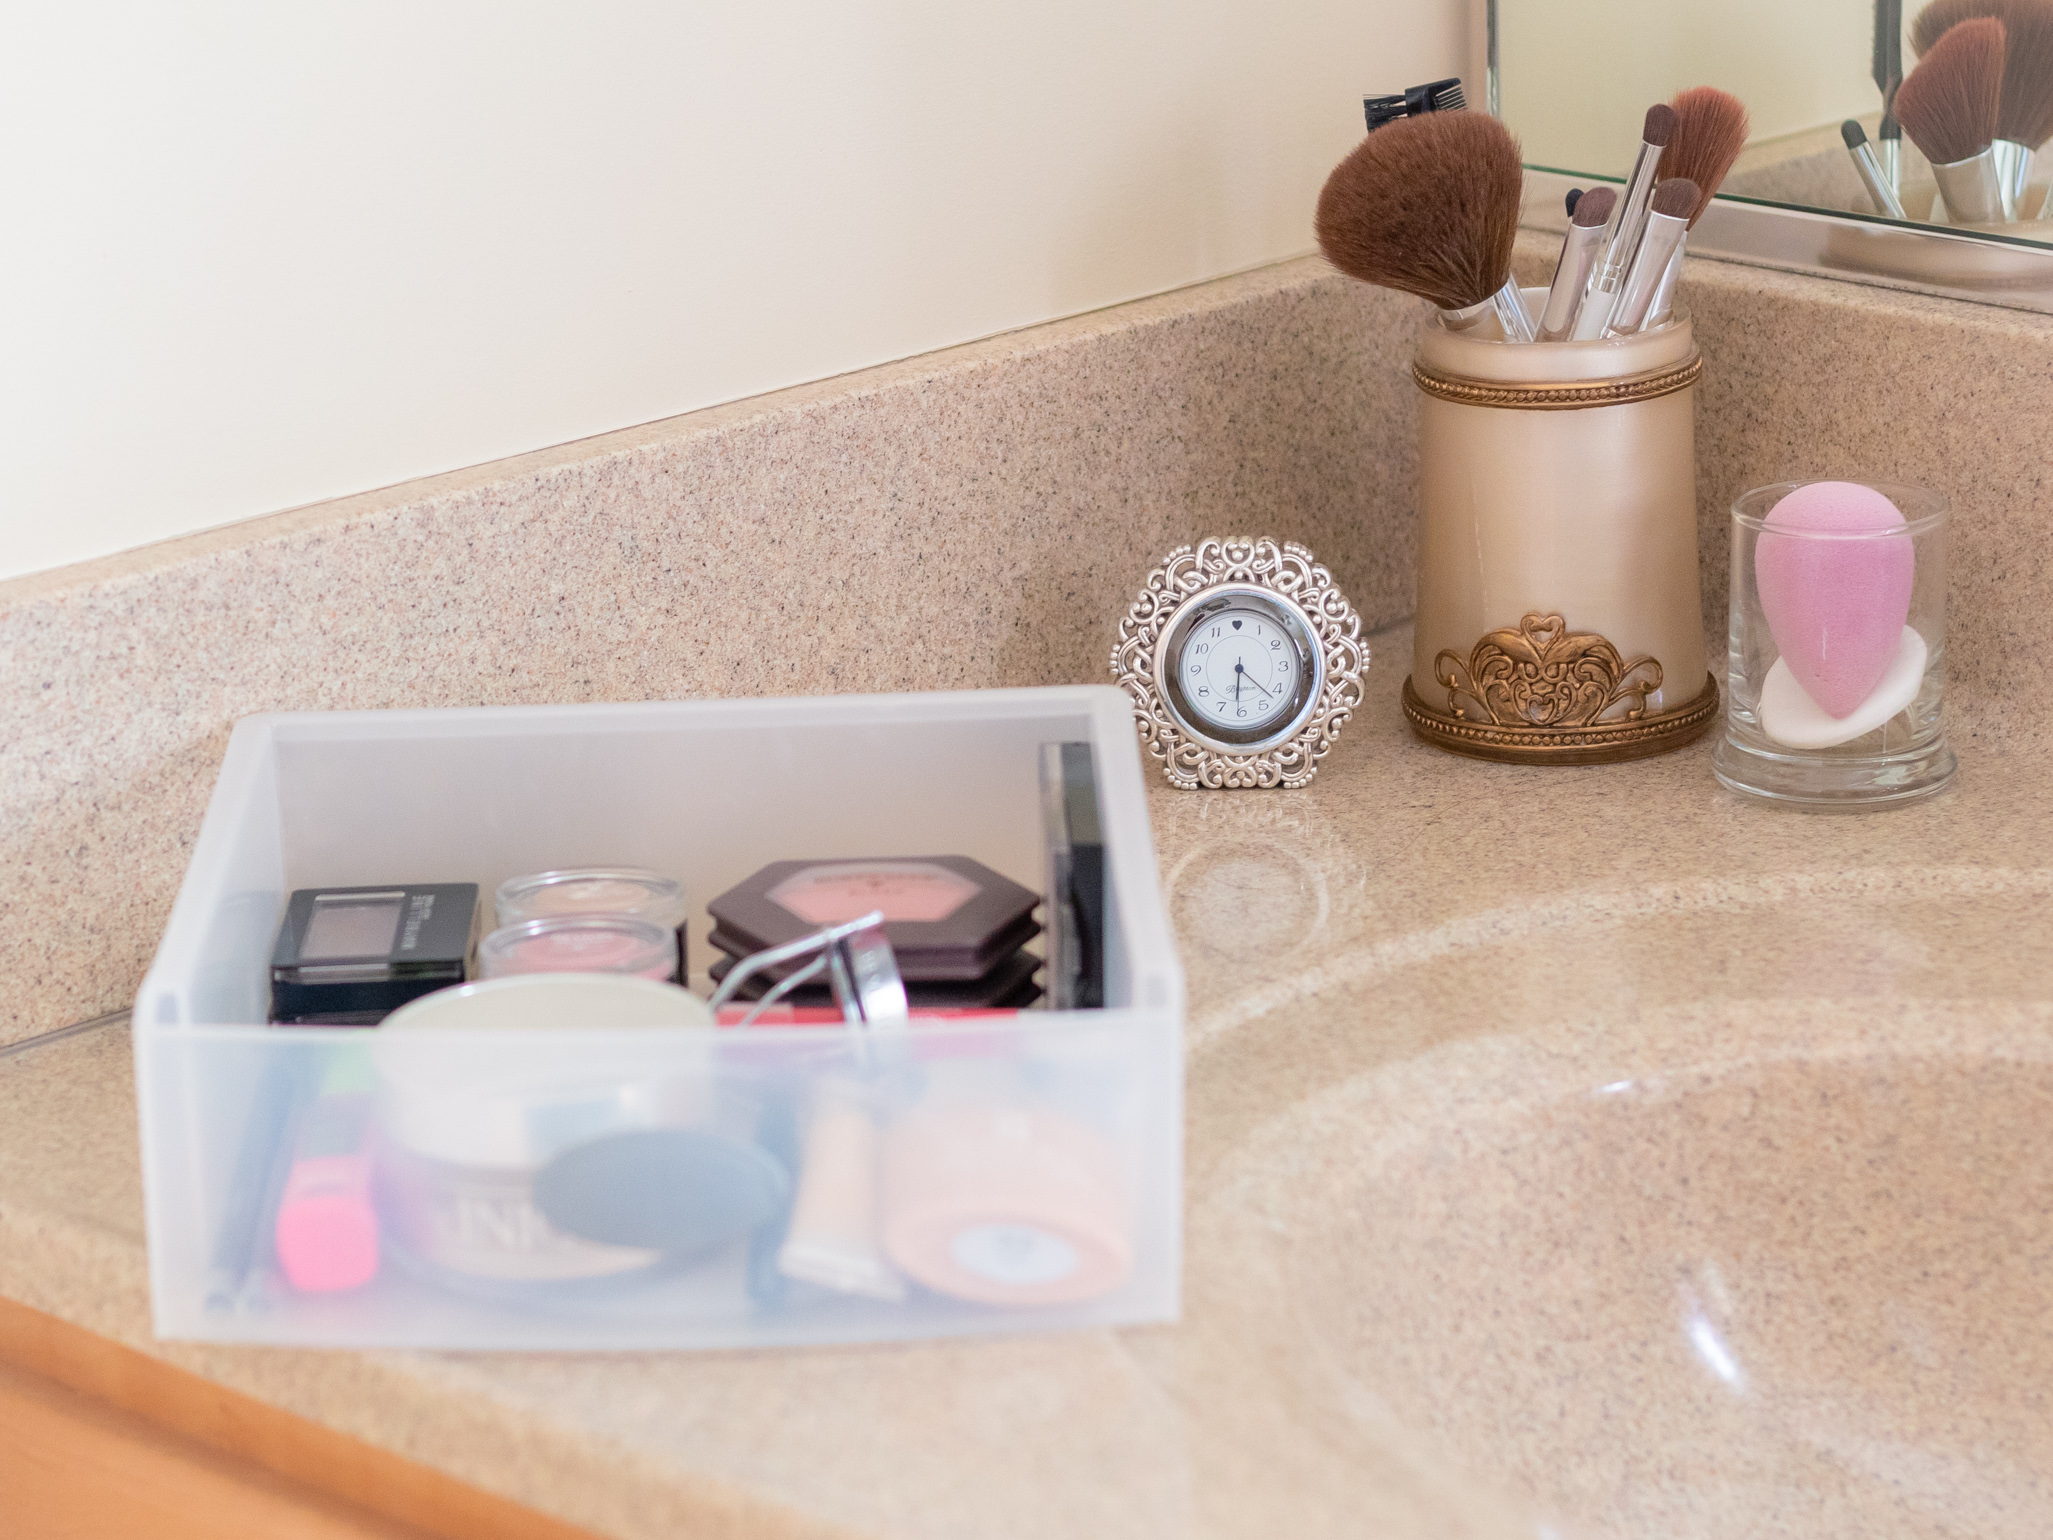 Bathroom Countertop with my Makeup Essentials